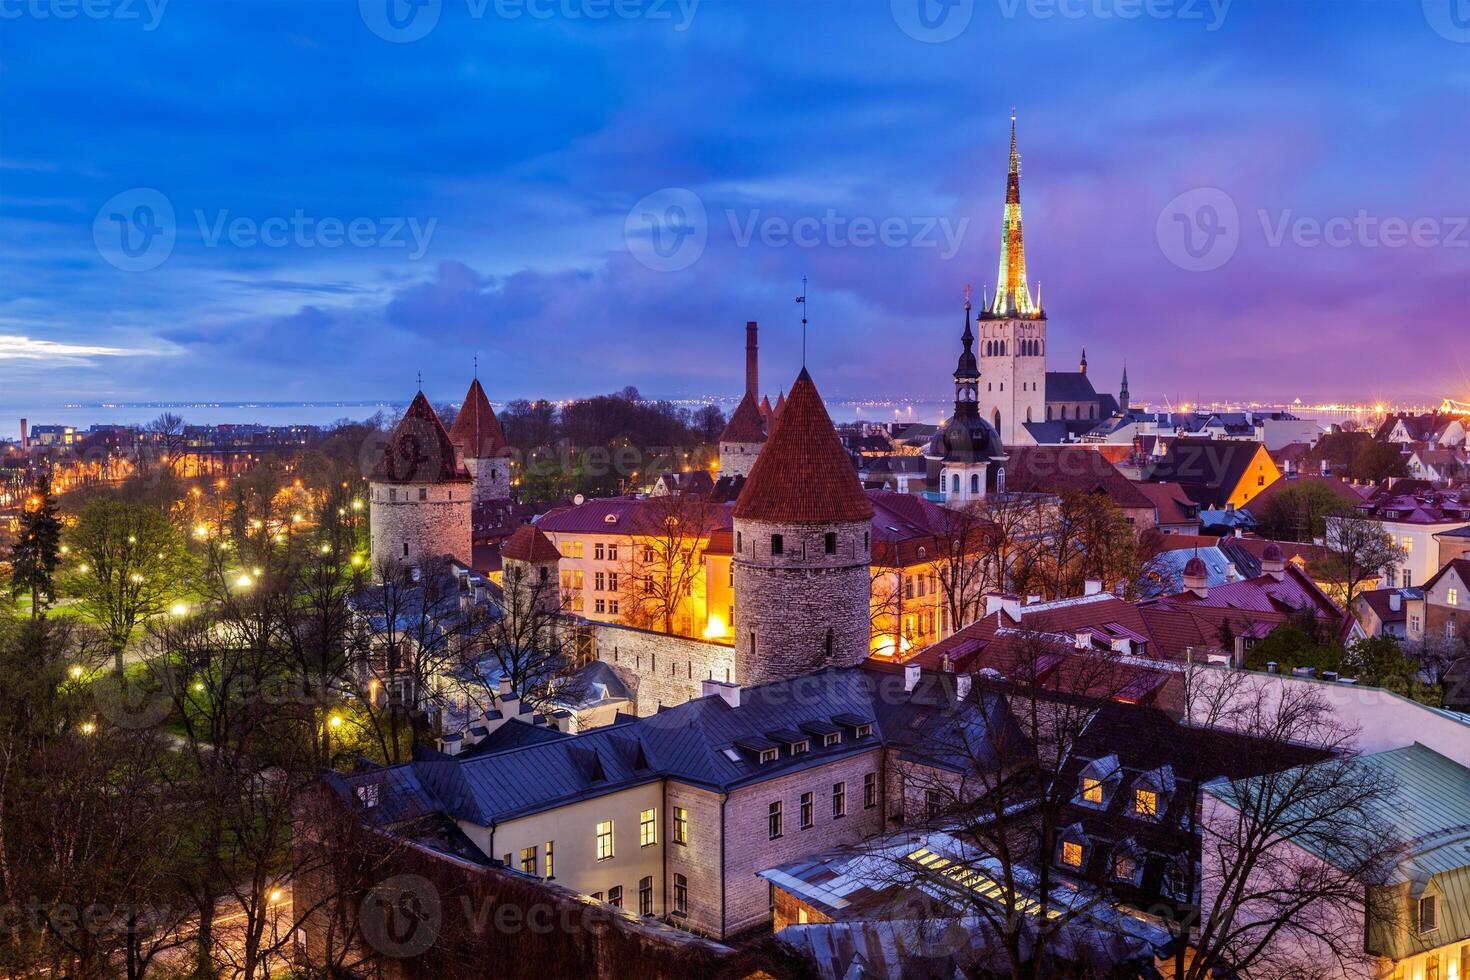 La vieille ville médiévale de Tallinn, Estonie photo